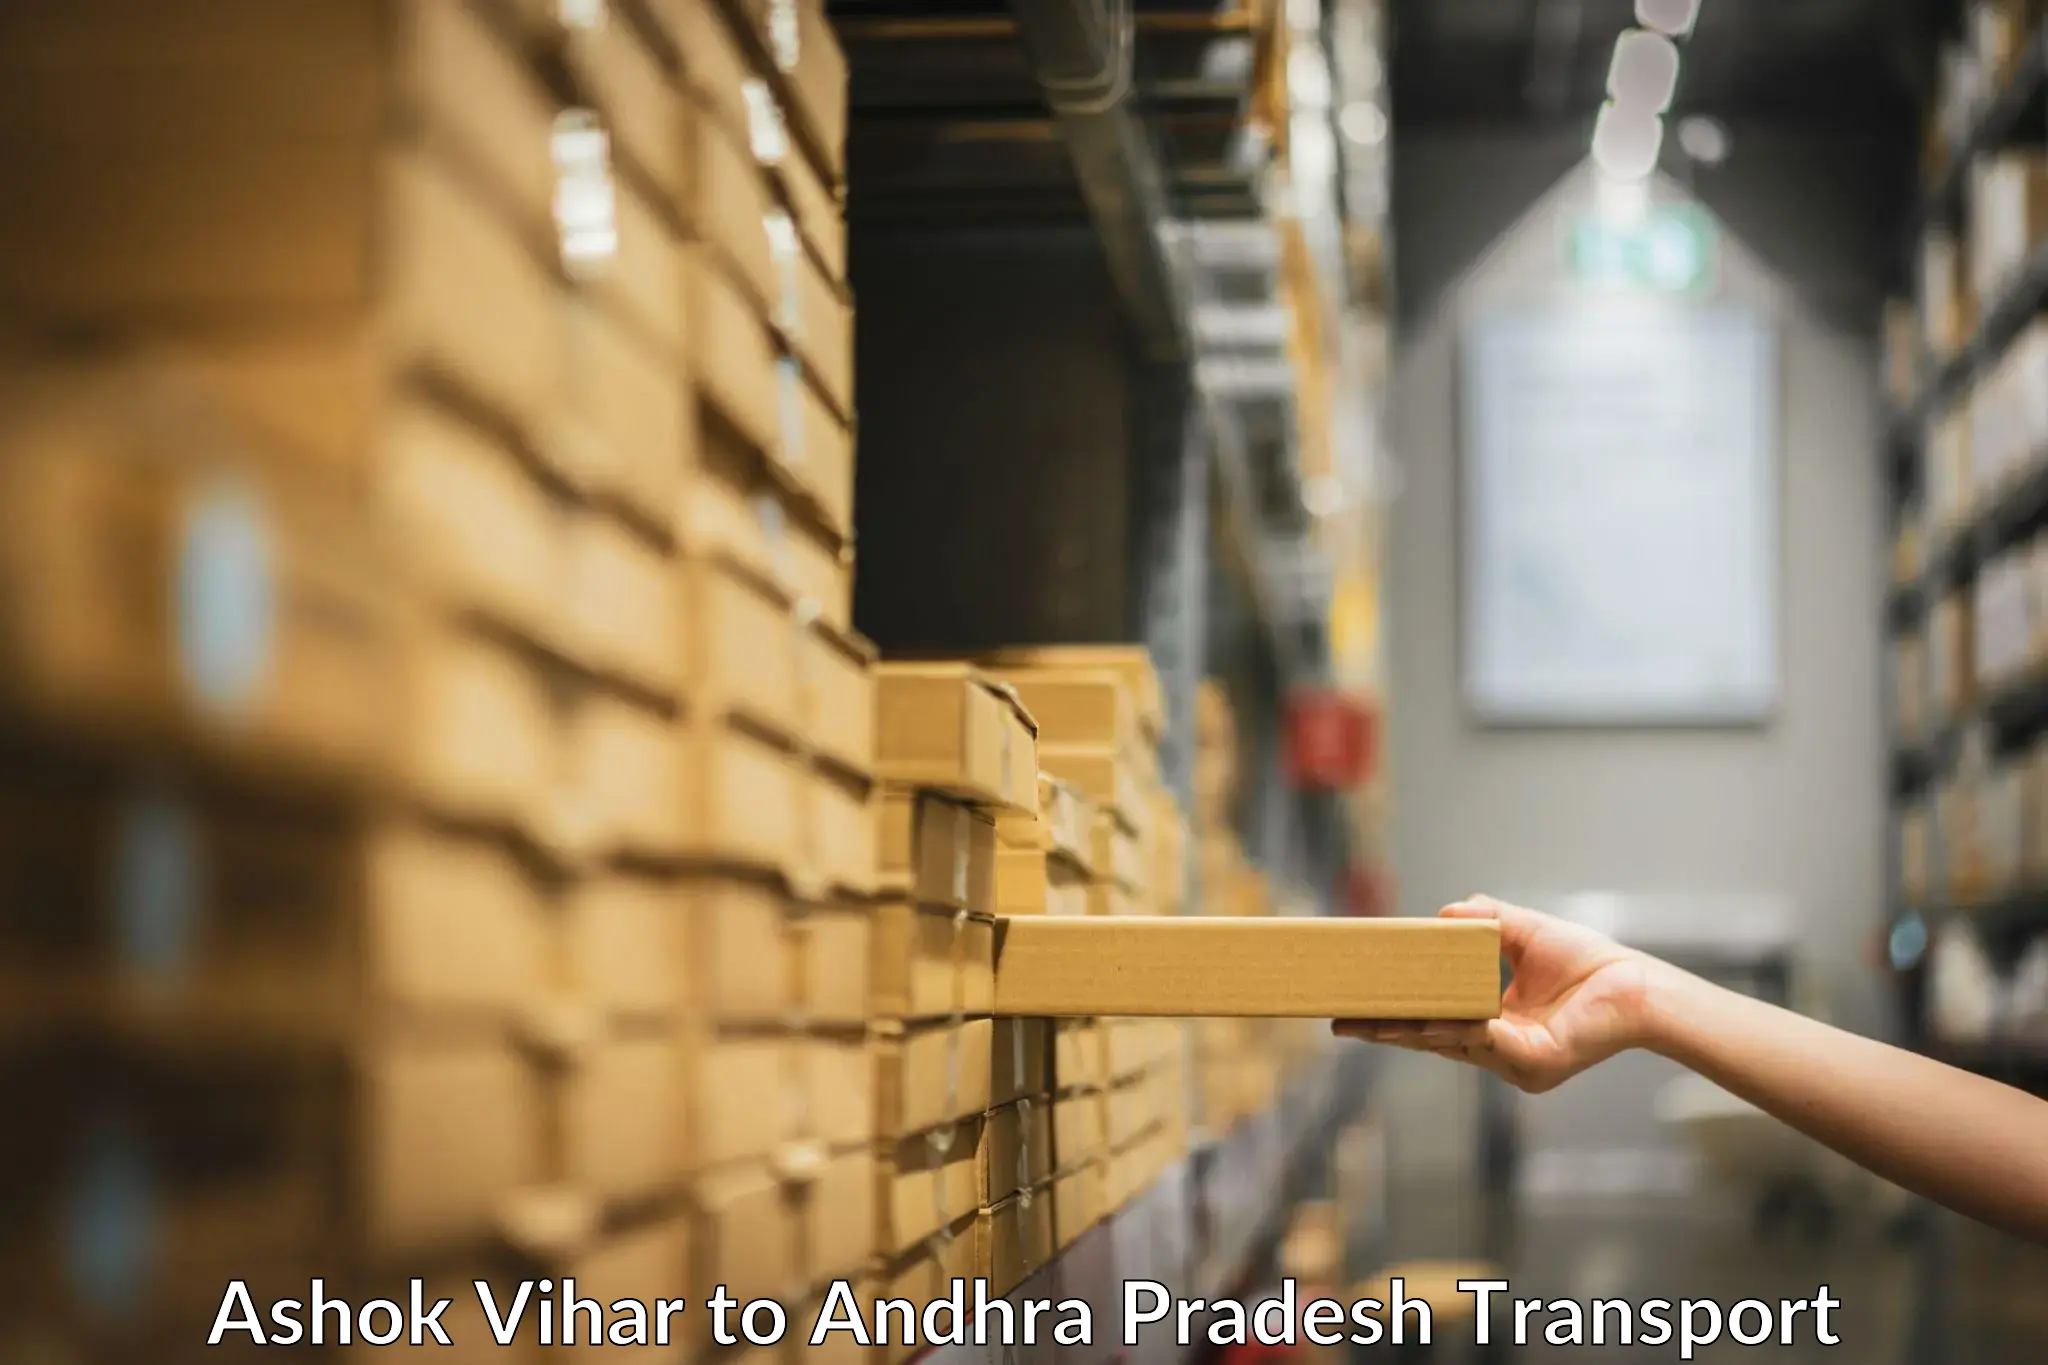 Intercity transport Ashok Vihar to Puttur Tirupati